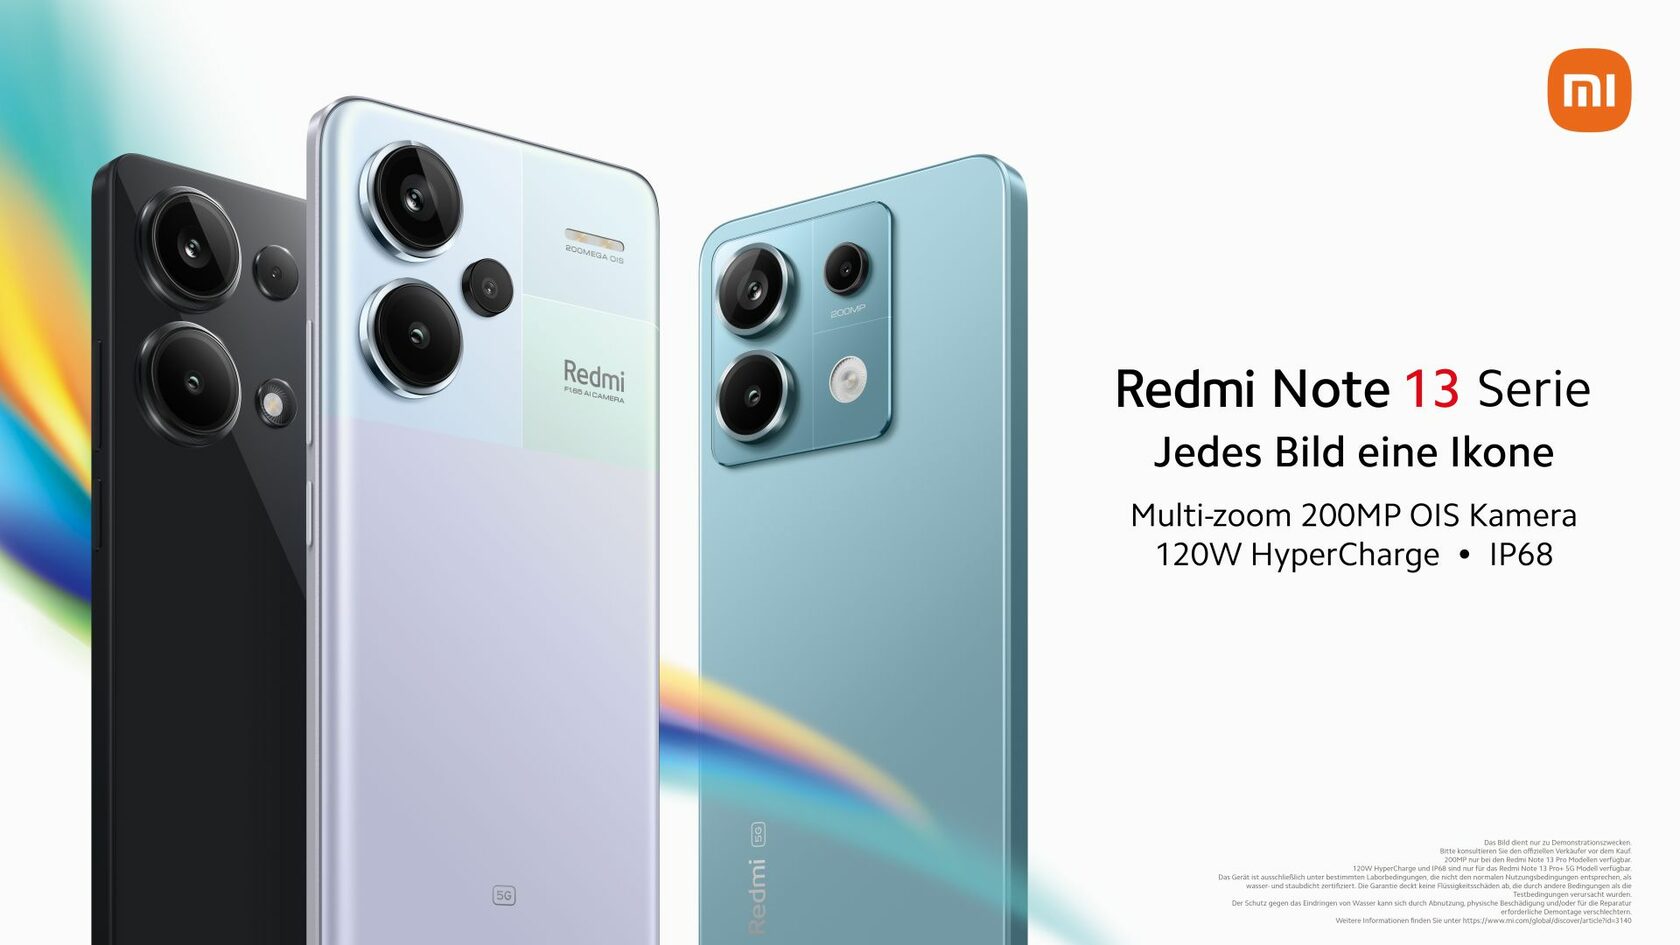 Xiaomi stellt die neue Redmi Note 13 Serie vor